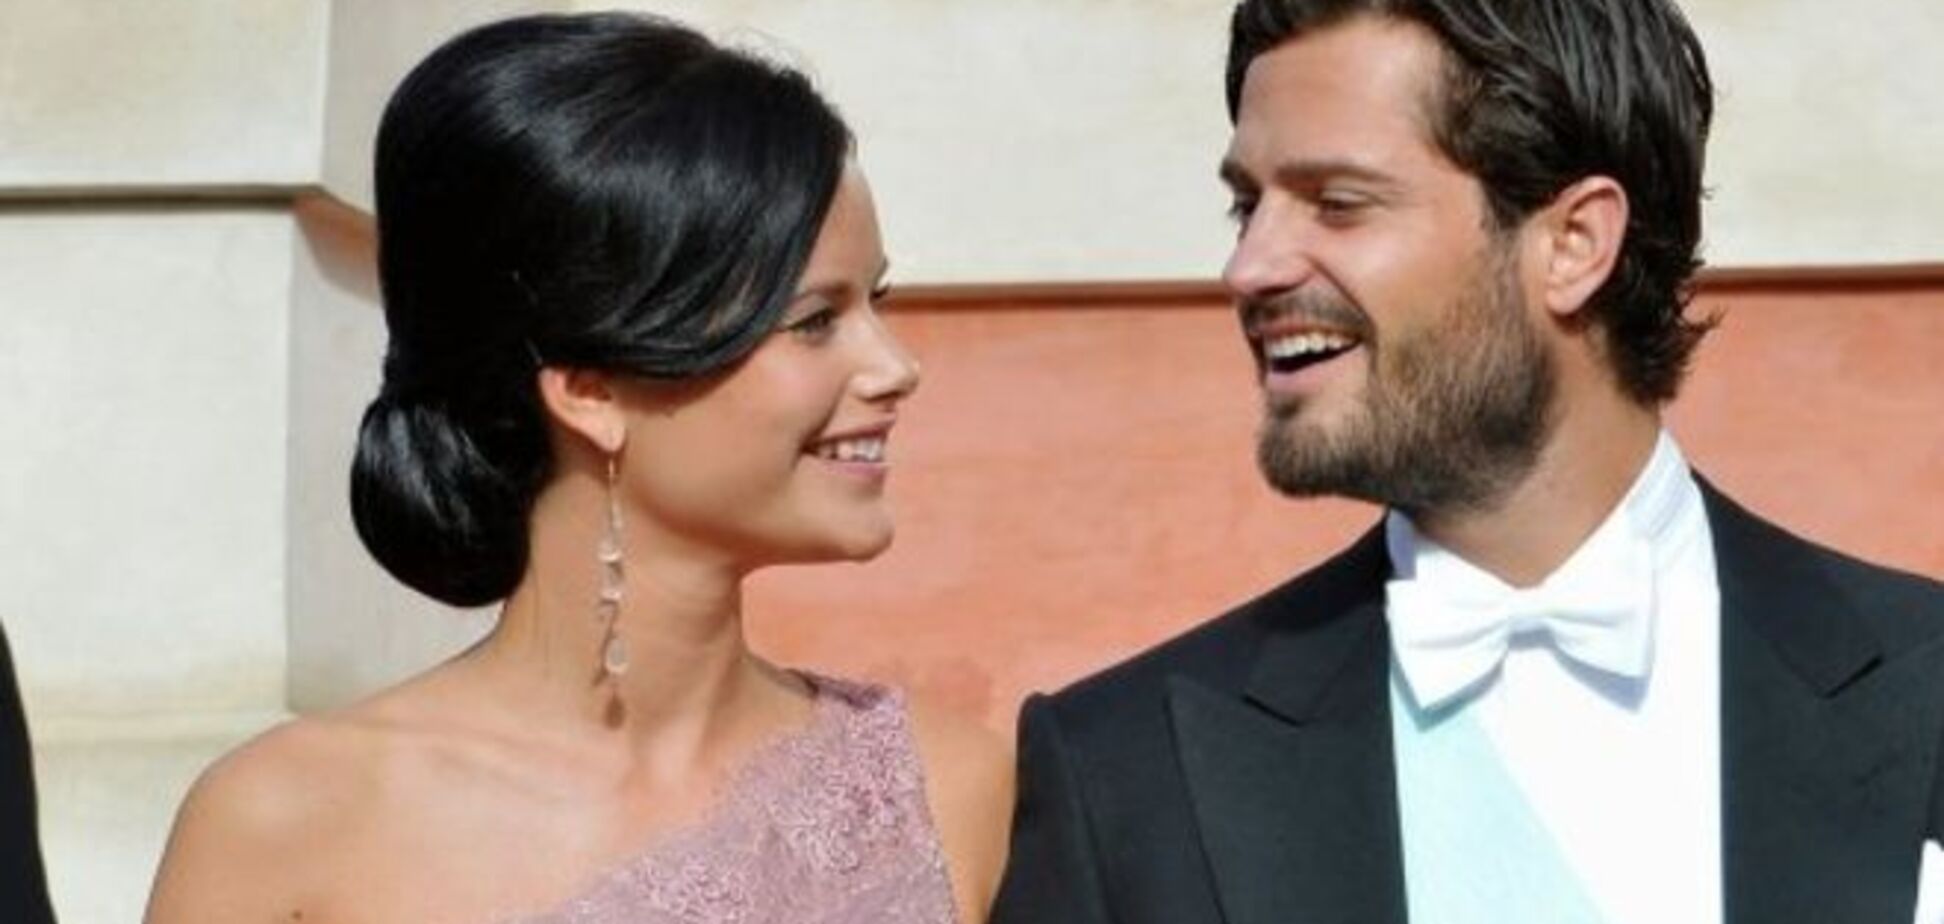 Современная Золушка: шведский принц женится на девушке из народа